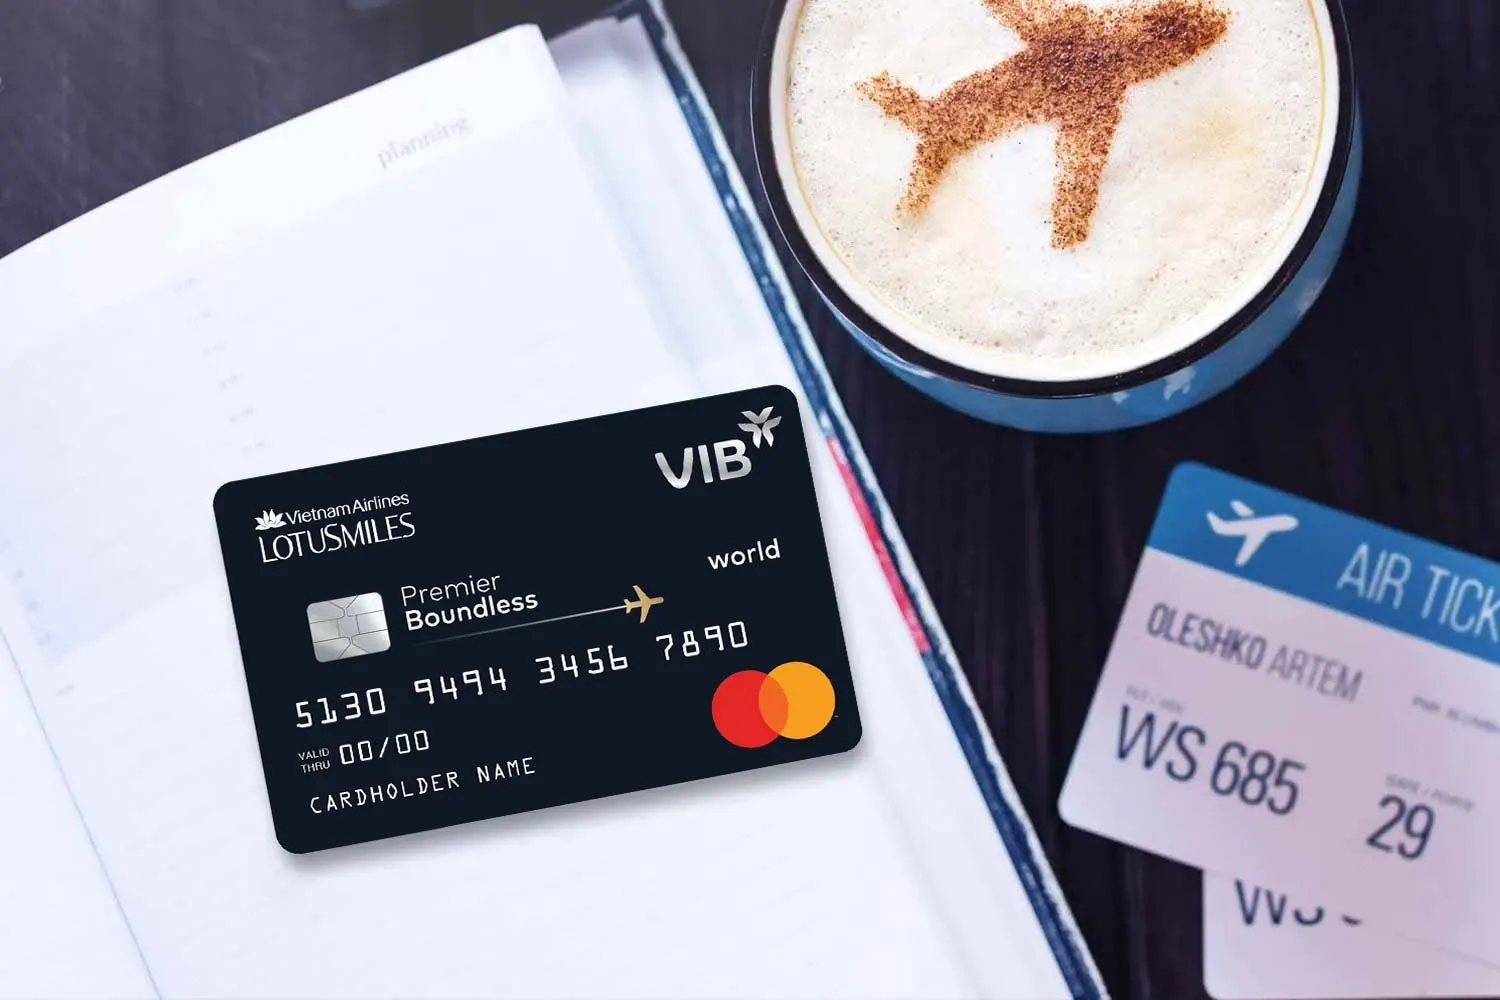 VIB Premier Boundless - thẻ tín dụng dành cho doanh nhân với hạn mức 2 tỷ đồng